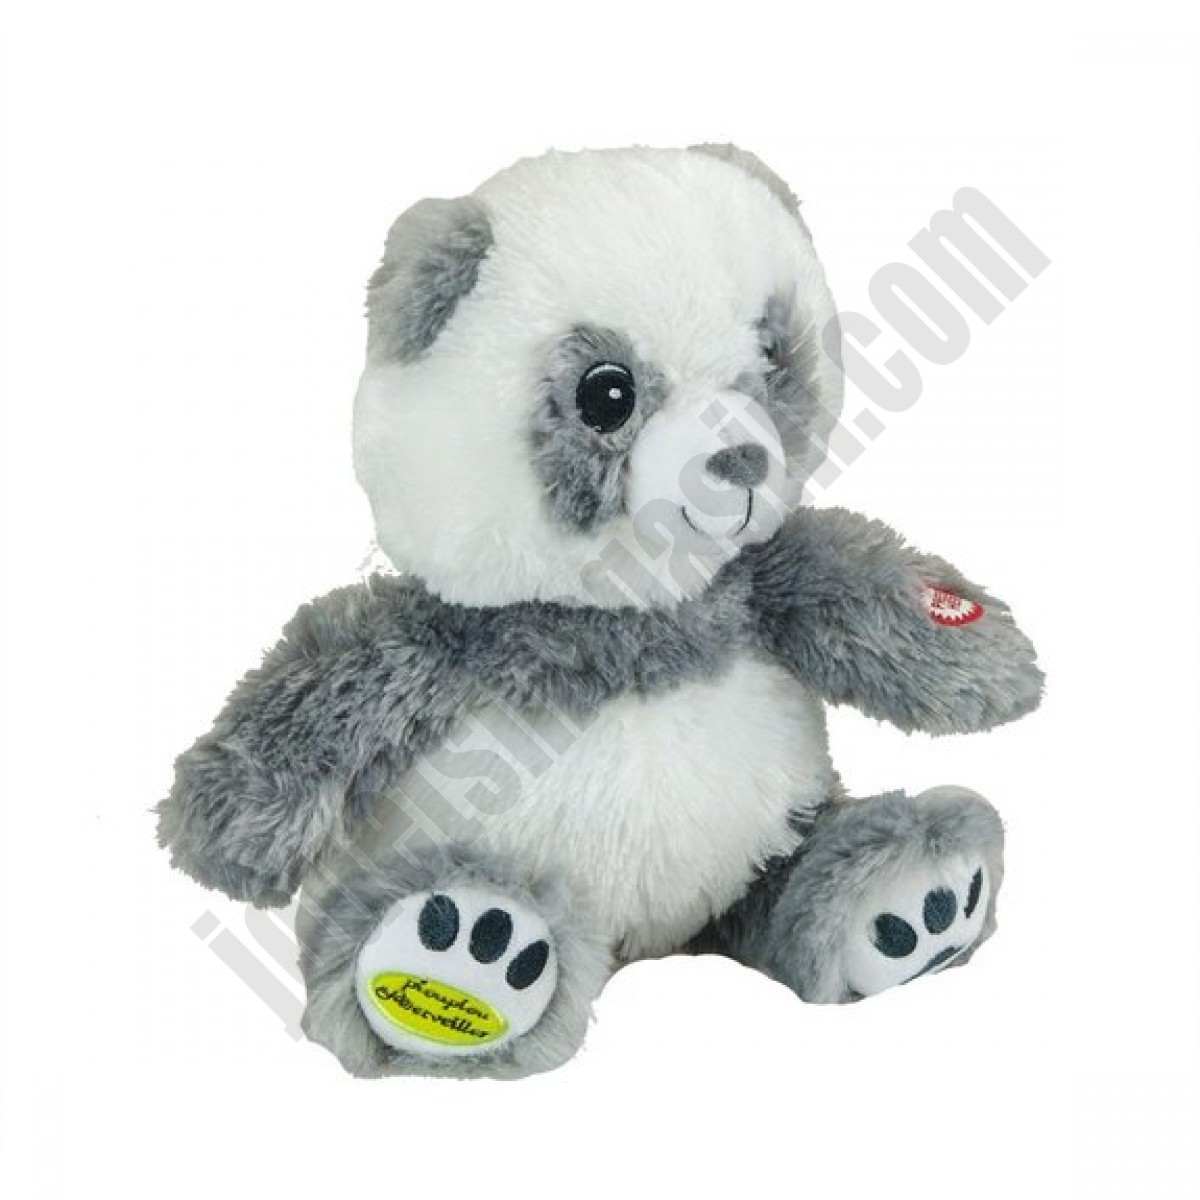 Chouka panda lumineux ◆◆◆ Nouveau - Chouka panda lumineux ◆◆◆ Nouveau